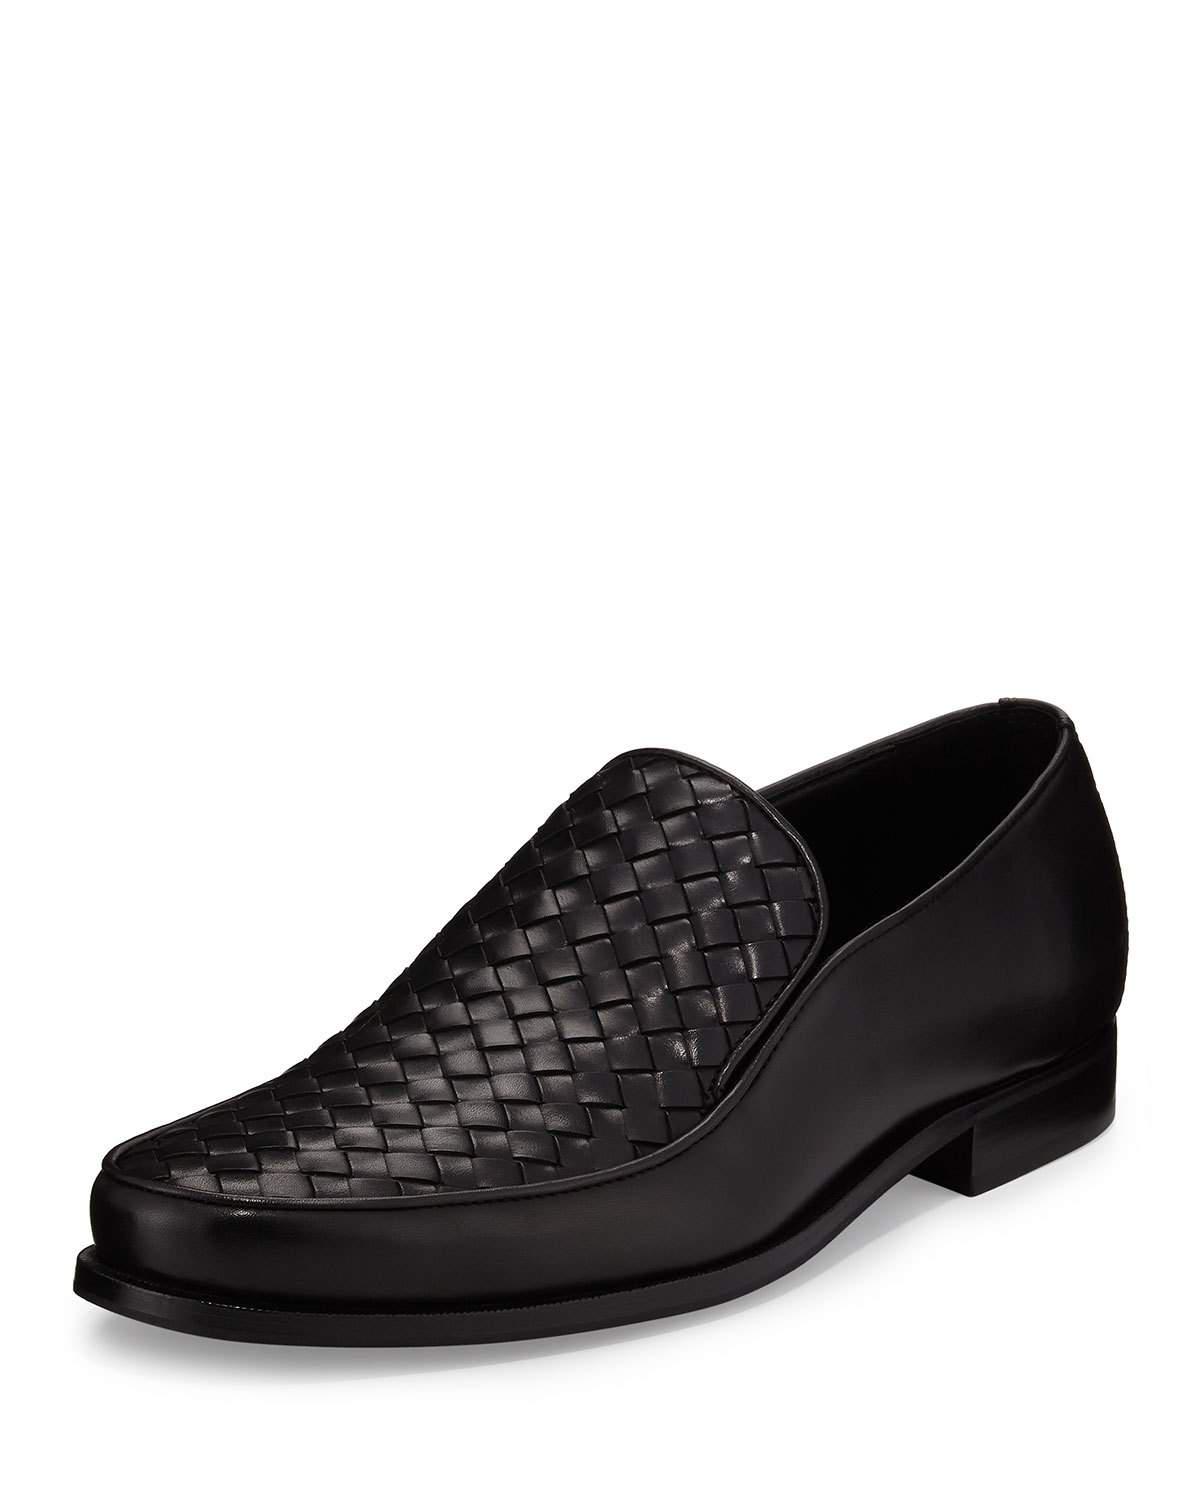 Lyst - Bottega Veneta Woven Leather Loafer in Black for Men - Save 2. ...